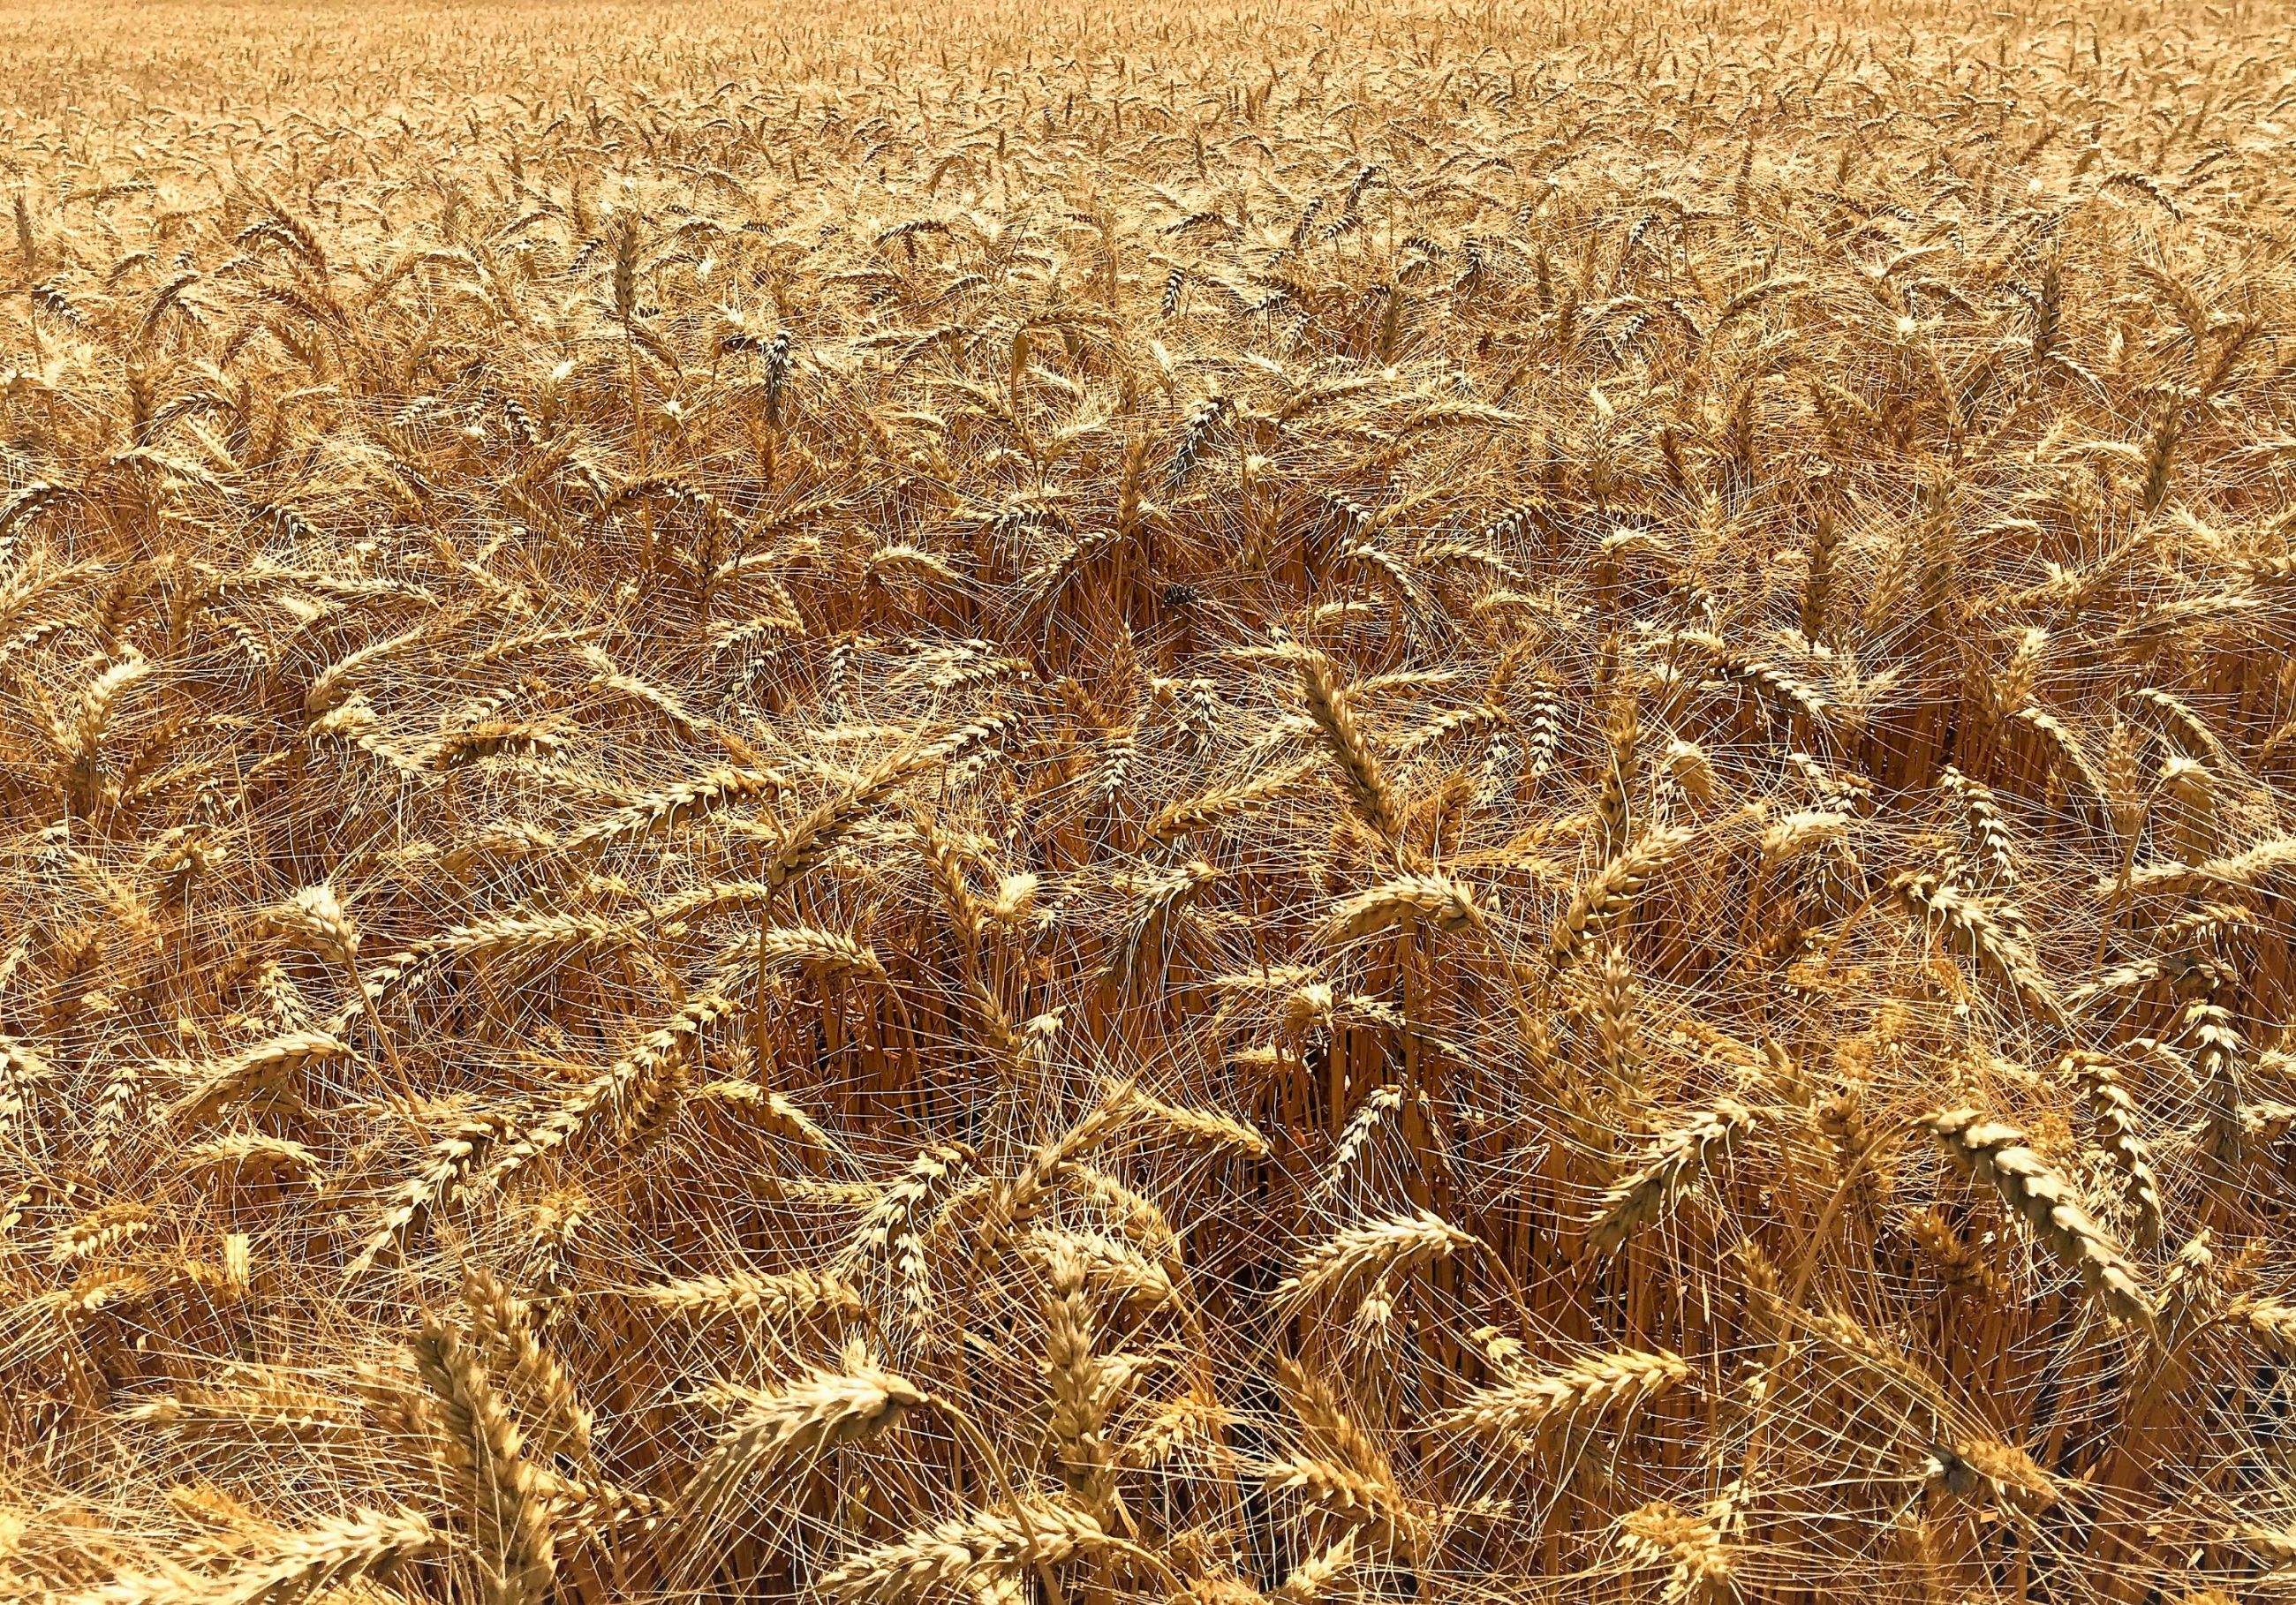 Pšeničné pole